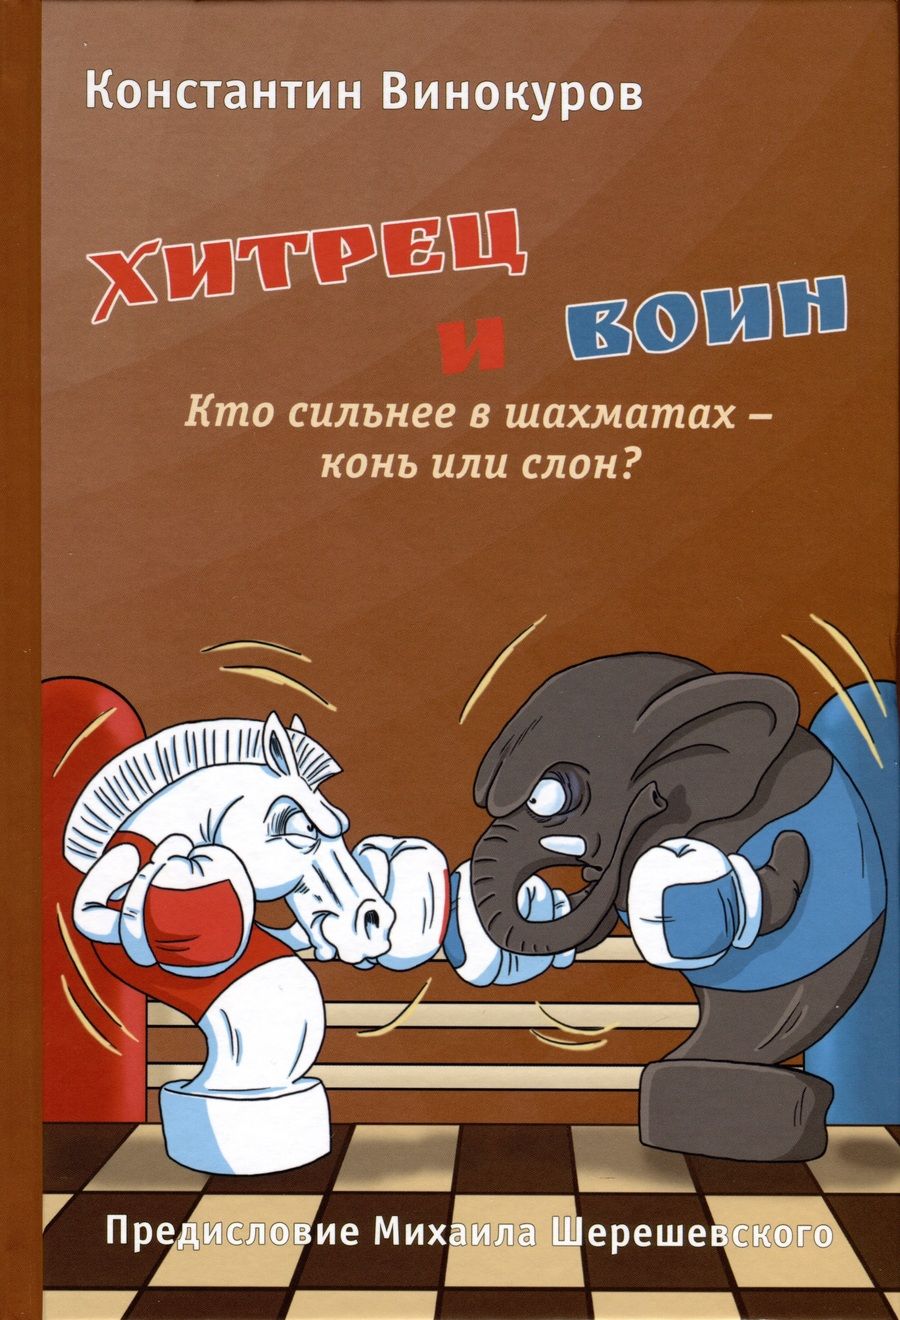 Обложка книги "Винокуров: Хитрец и воин. Кто сильнее в шахматах - конь или слон?"